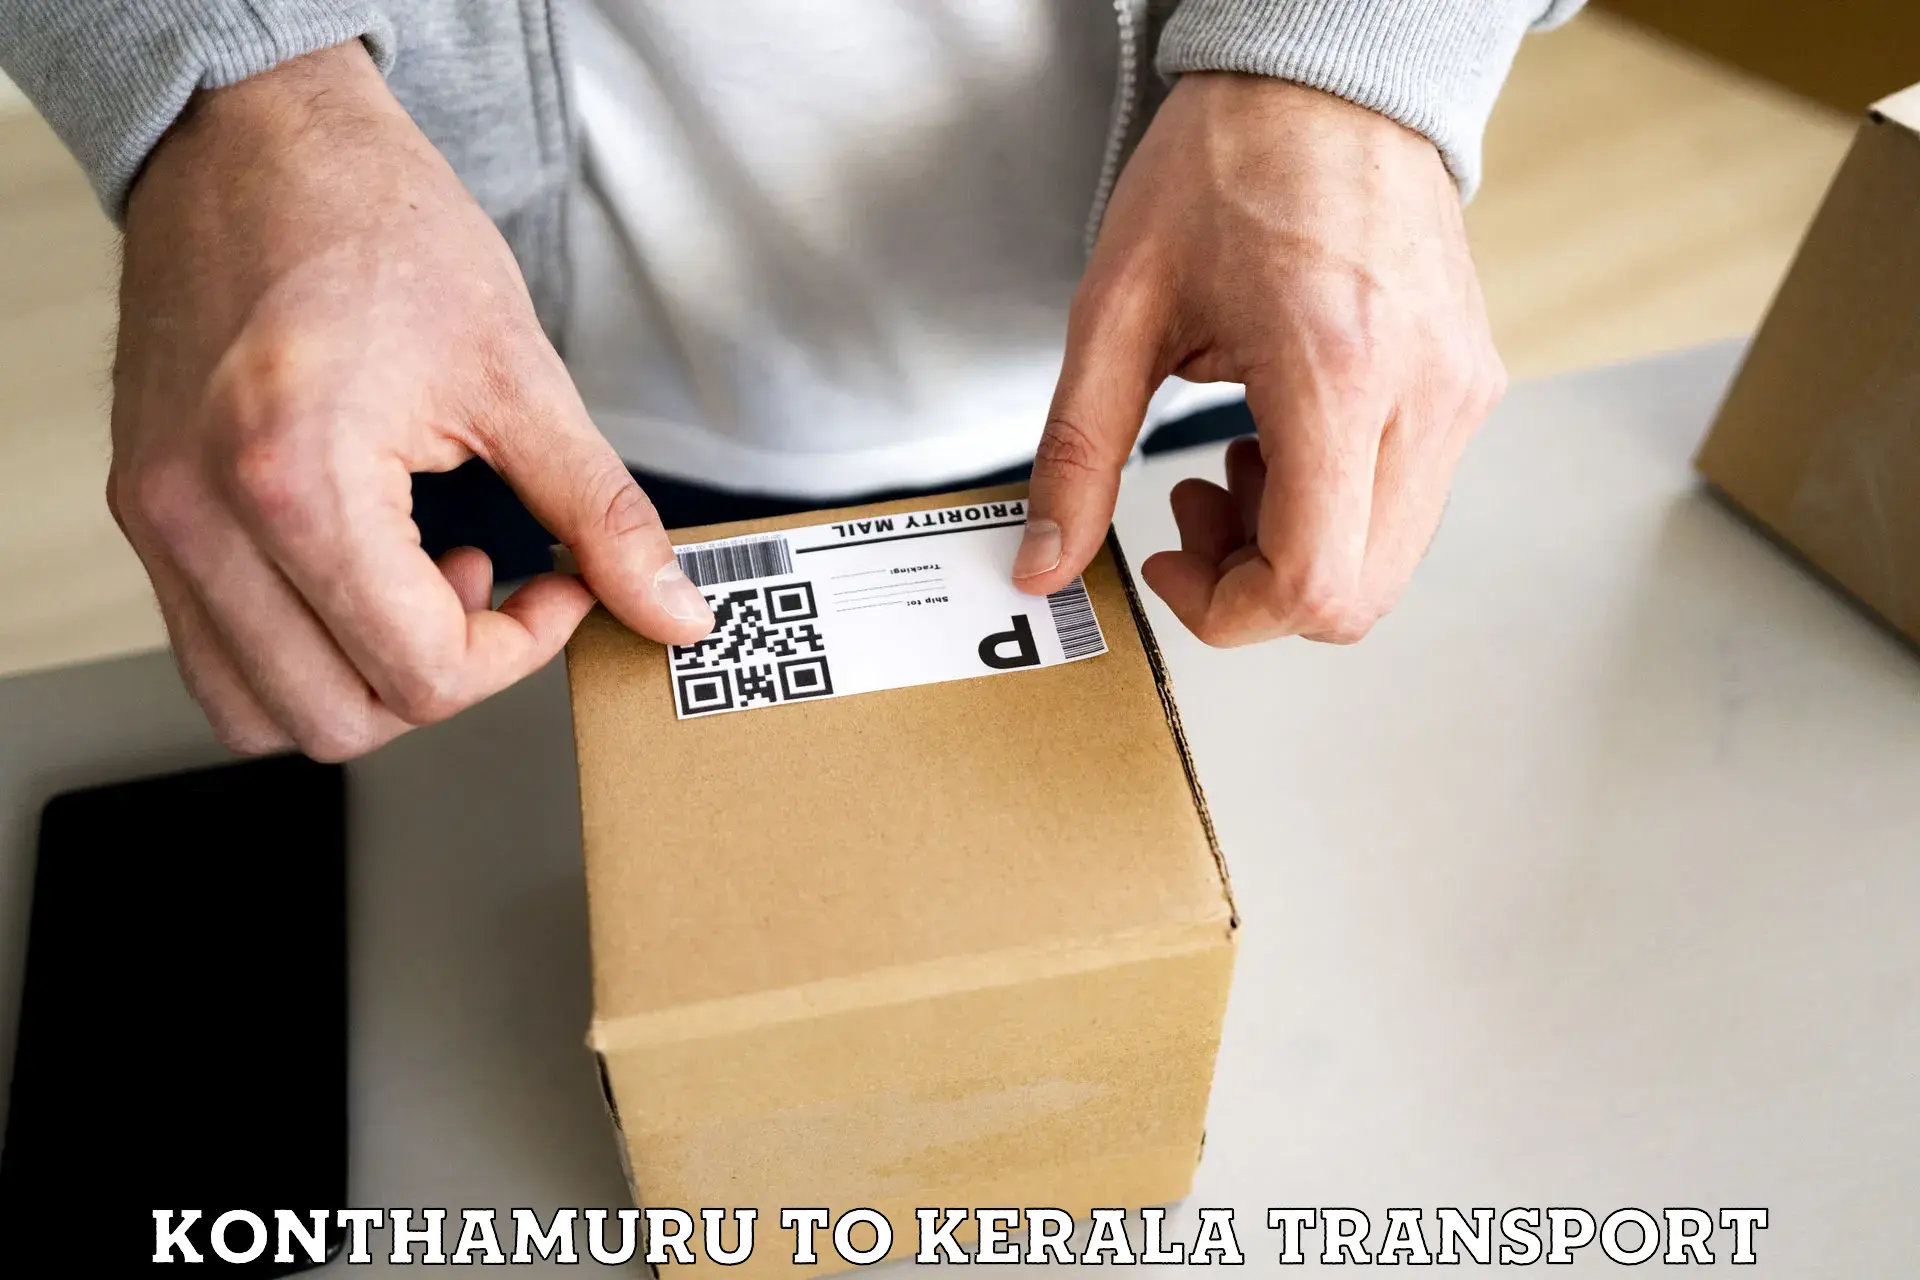 Two wheeler parcel service Konthamuru to Vadakara